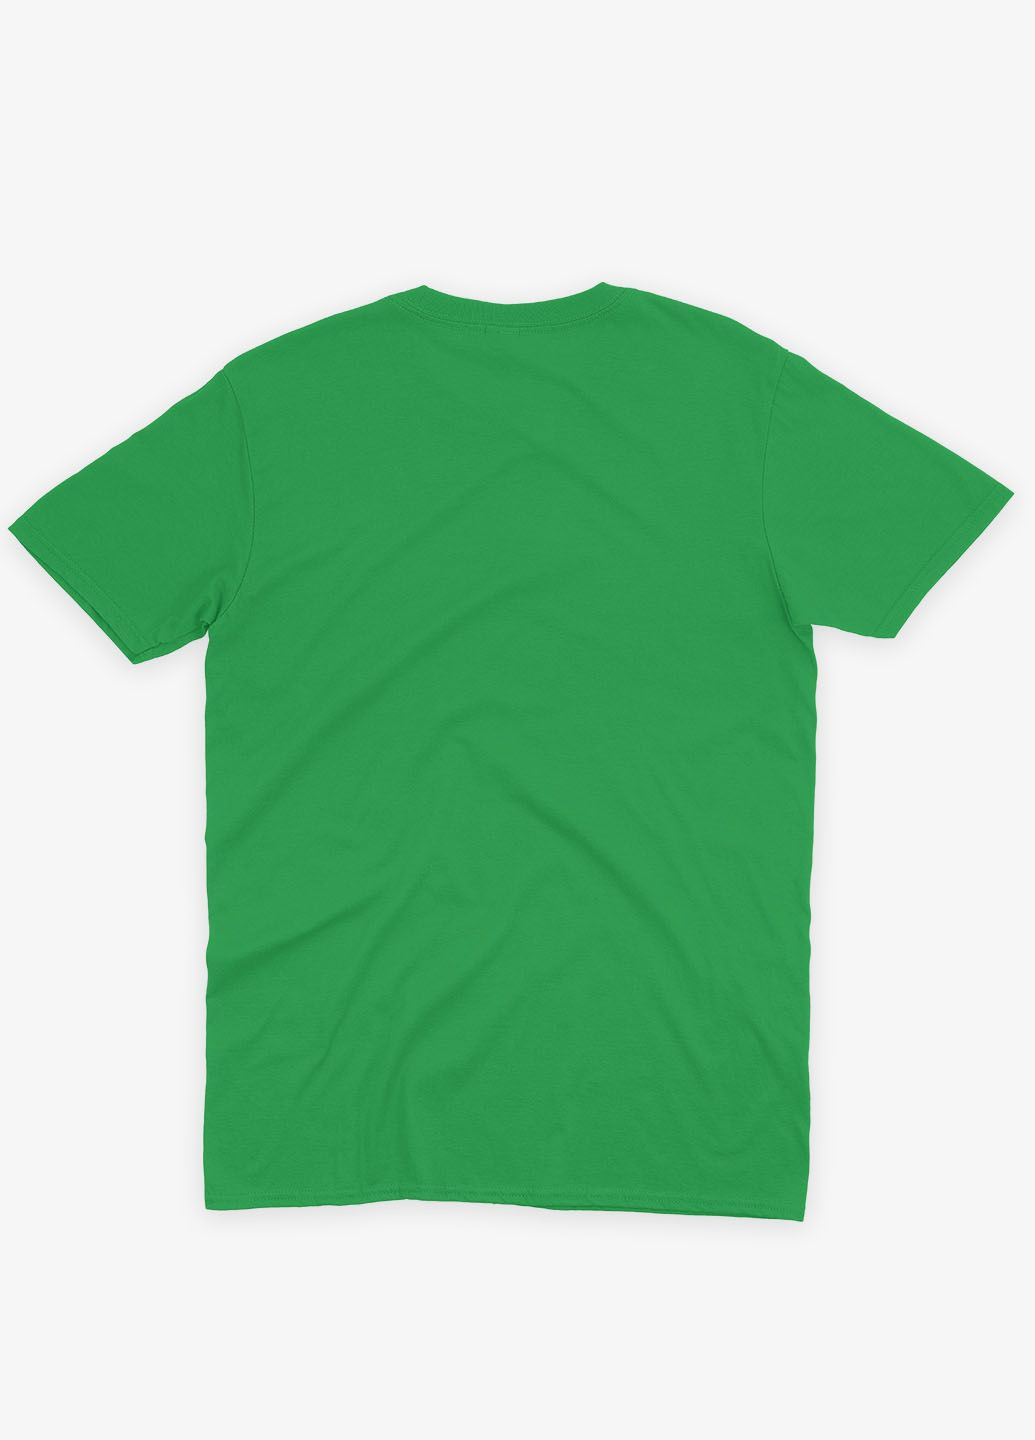 Зеленая демисезонная футболка для мальчика с патриотическим принтом призрак киева (ts001-4-keg-005-1-096-b) Modno